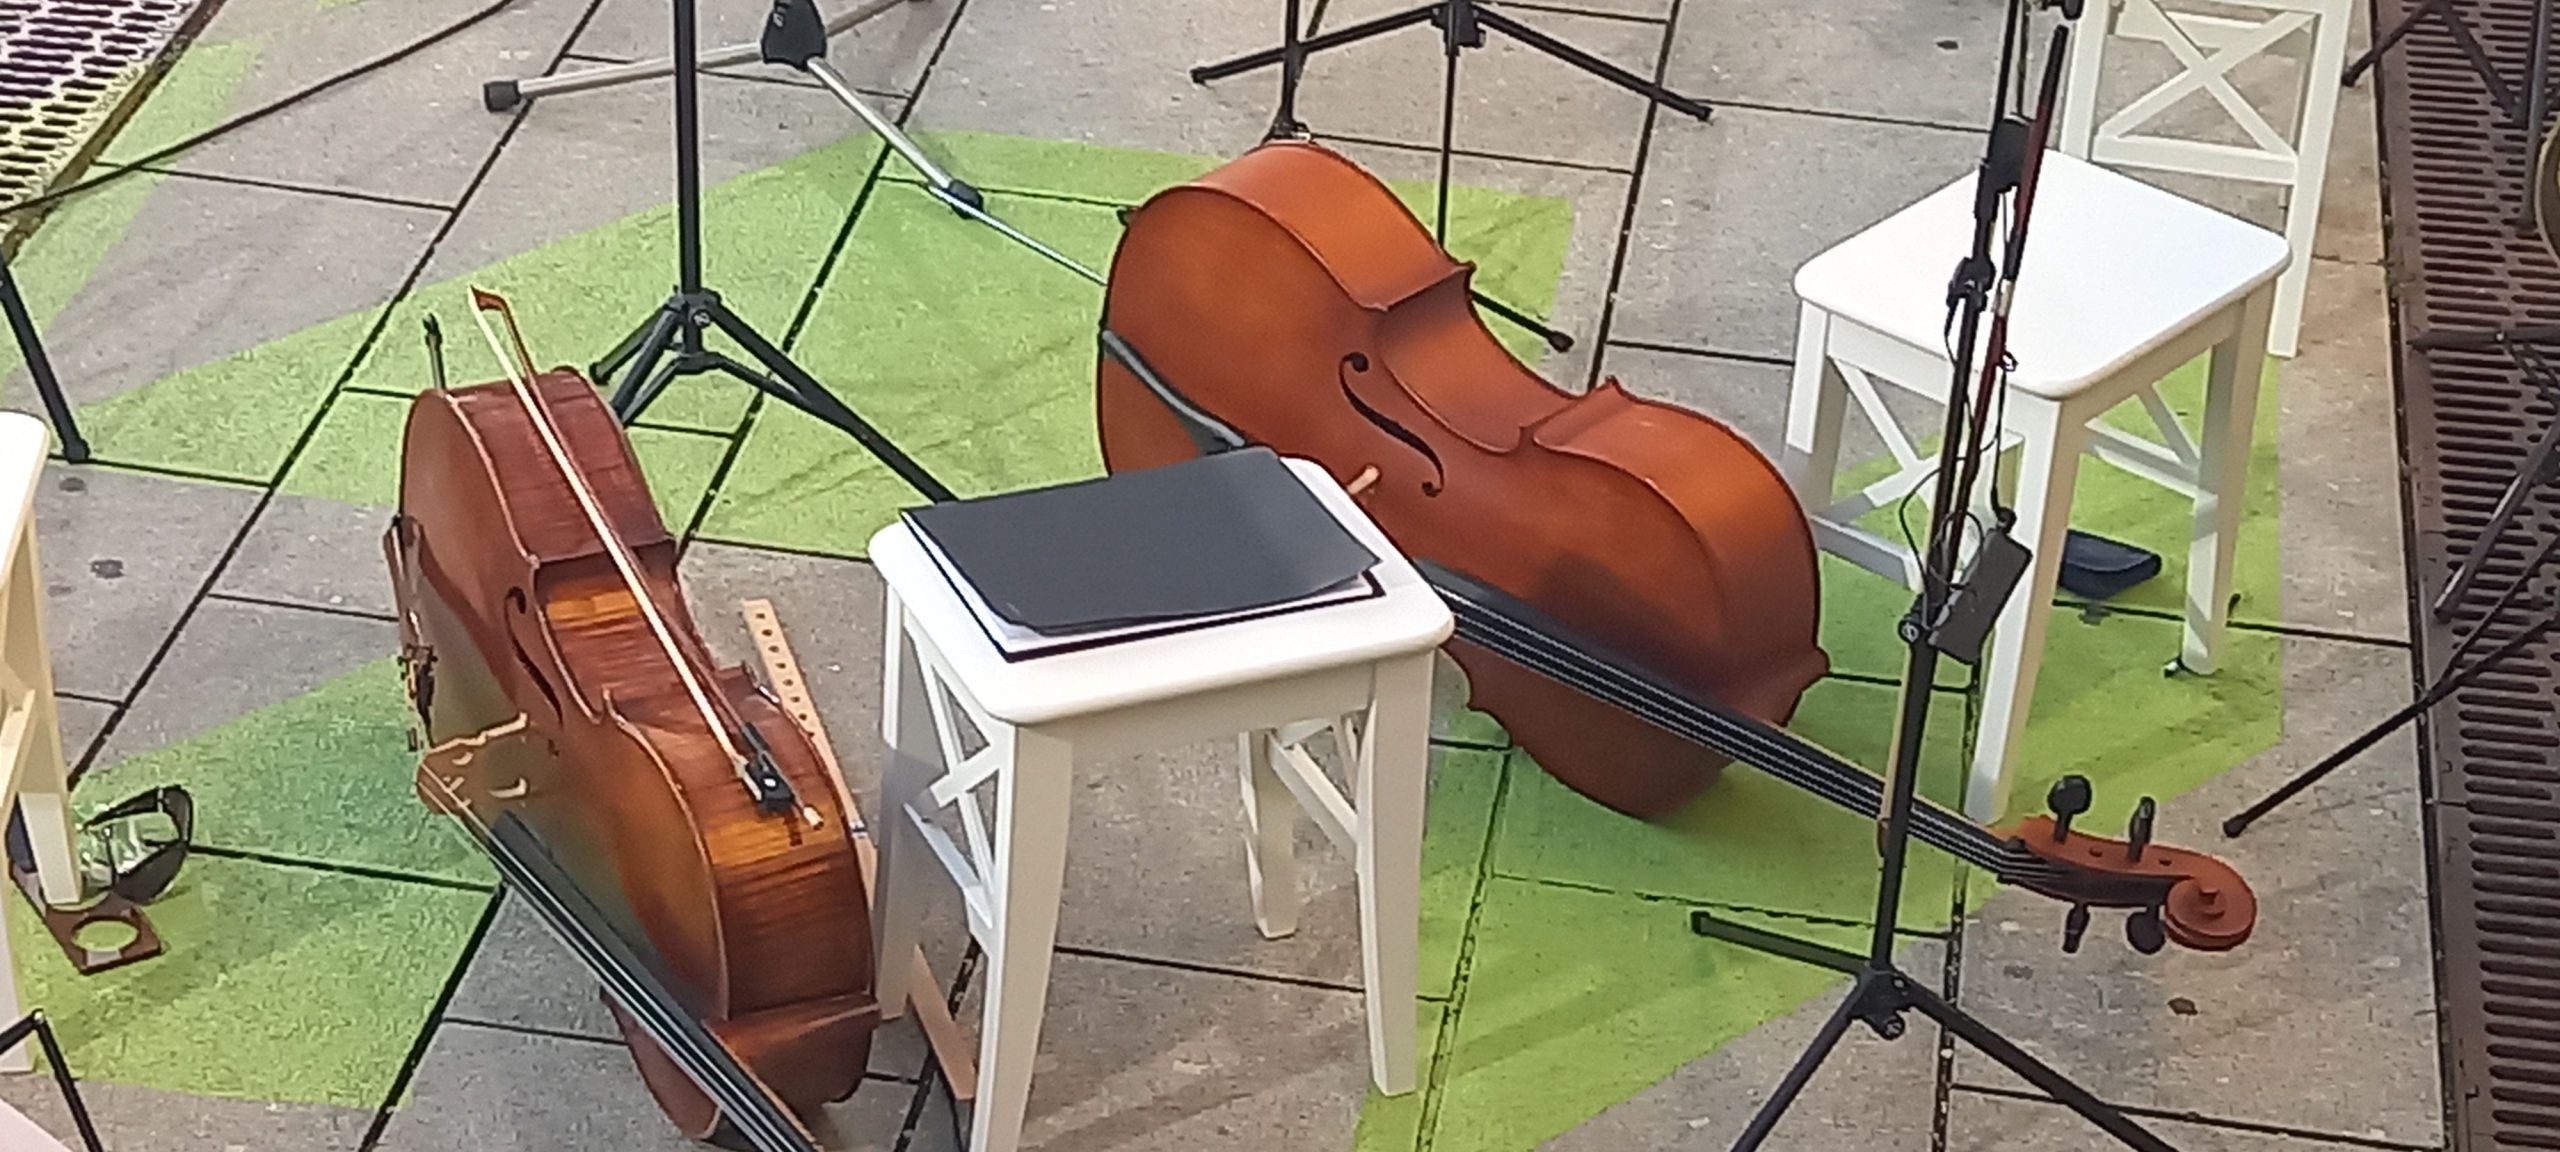 Klassik-Open-Air am Salstadel: Instrumente am Boden